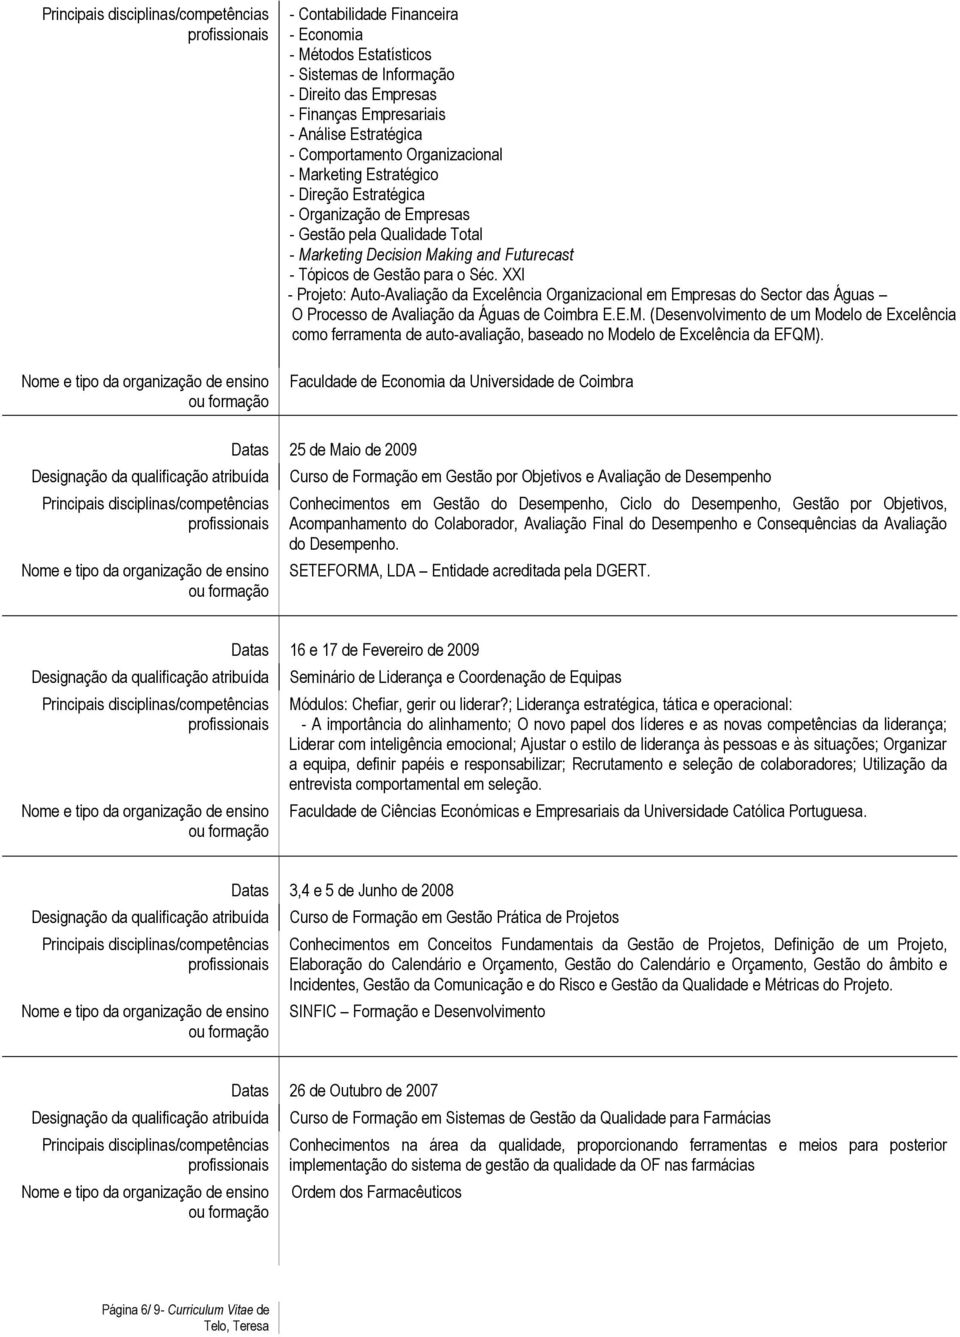 XXI - Projeto: Auto-Avaliação da Excelência Organizacional em Empresas do Sector das Águas O Processo de Avaliação da Águas de Coimbra E.E.M.